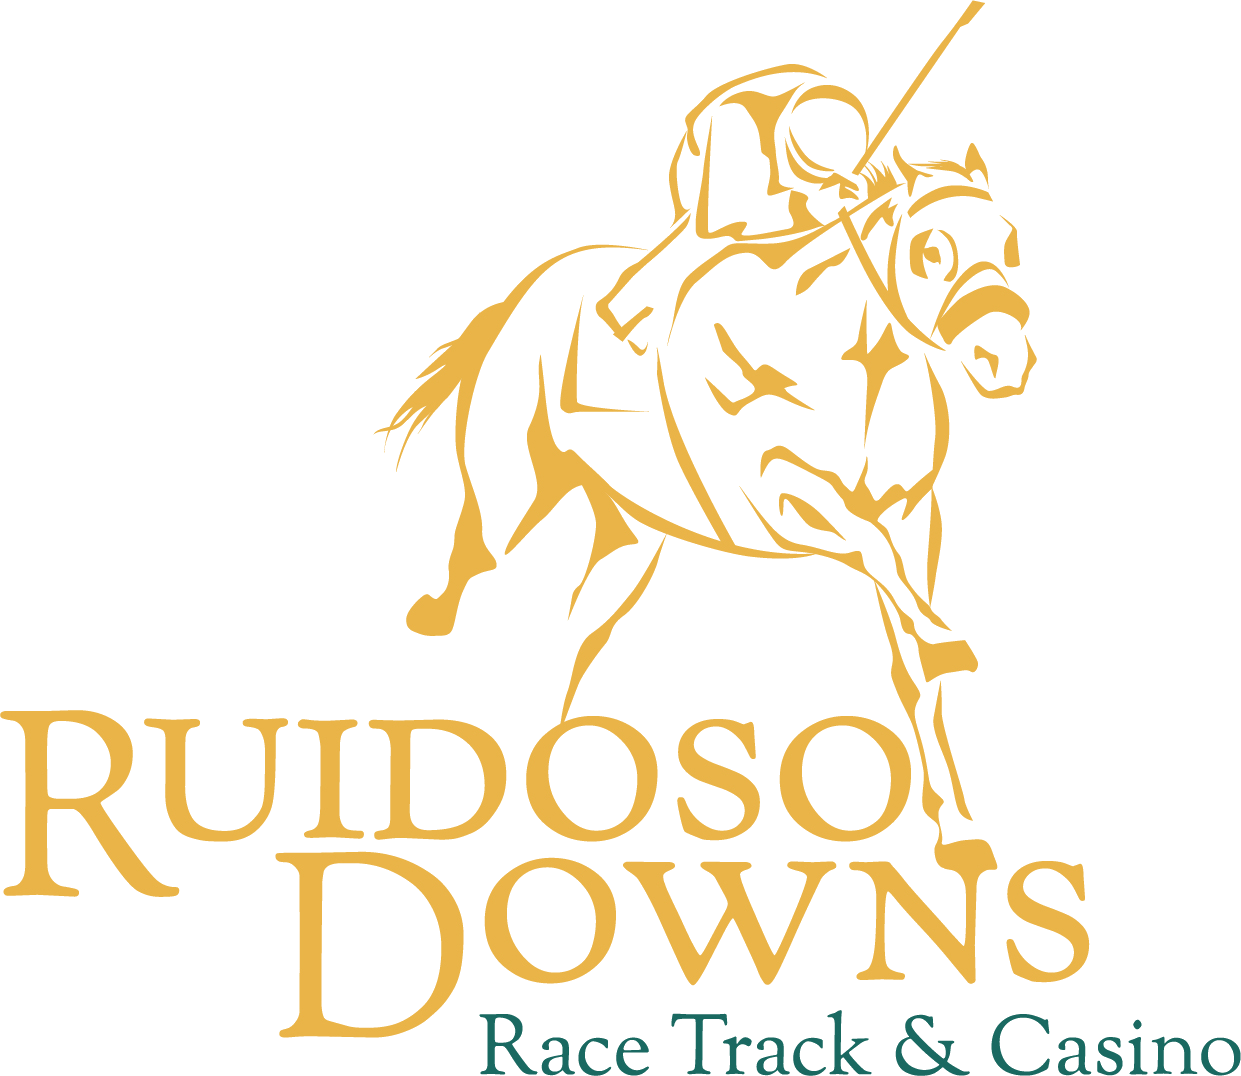 Ruidoso Downs Race Track and Casino